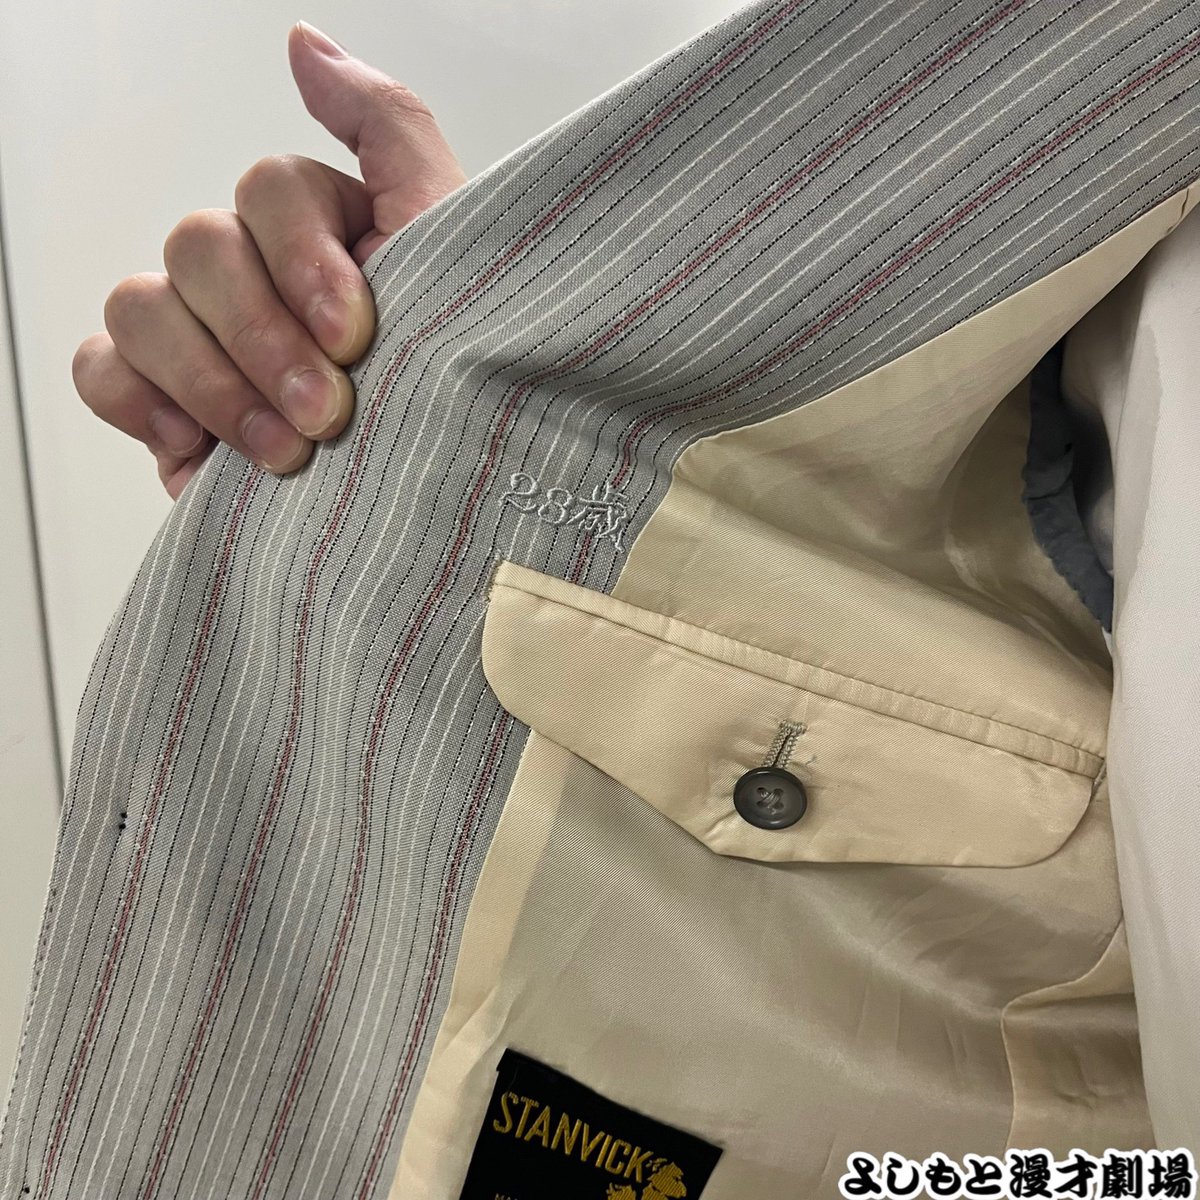 【新衣装✨】 #エナマキシマ 坂田さん が新衣装になりました💫 ☝️ポイント☝️ ジャケット内側の23歳刺繍がポイントだそうです🪡🧵 #新衣装